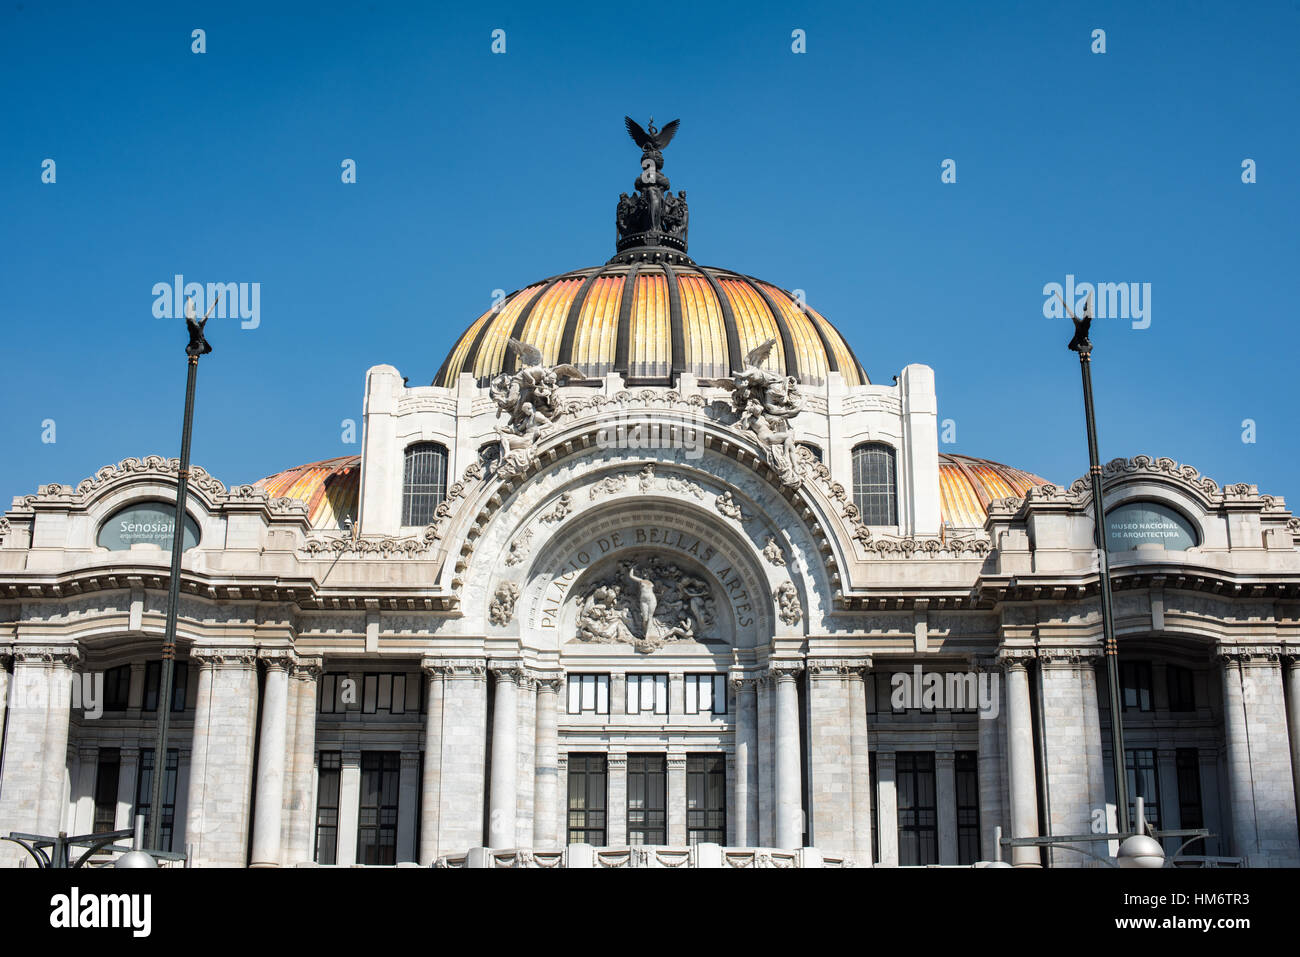 MEXIKO-STADT, Mexiko - der Palacio de Bellas Artes beherbergt Mexikos Nationaltheater. Mit einem Äußeren, das eine Mischung aus Neo Classicical und Art Nouveau Stil ist, und einem Interieur, das Art Deco ist, gilt es weithin als das schönste Gebäude in Mexiko-Stadt. Sie stammt aus dem frühen 20. Jahrhundert und befindet sich im historischen Viertel Centro von Mexiko-Stadt, das zum UNESCO-Weltkulturerbe gehört. Stockfoto